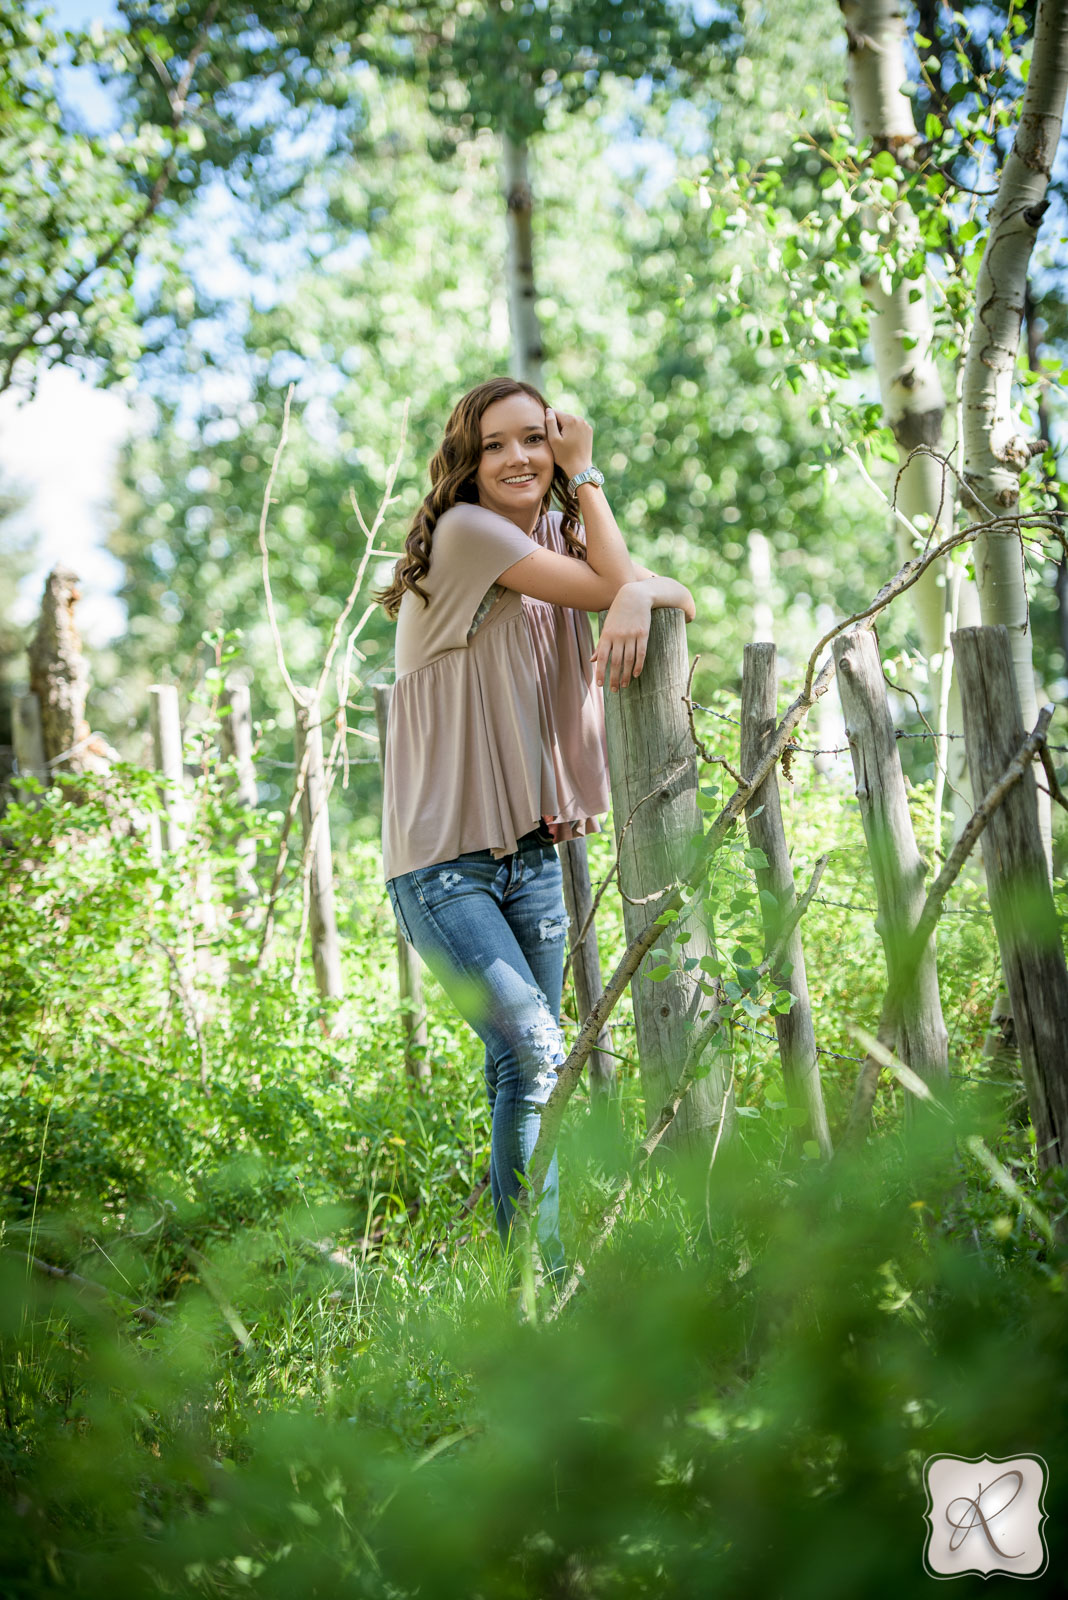 2016 senior photos in Durango, Colorado outdoors